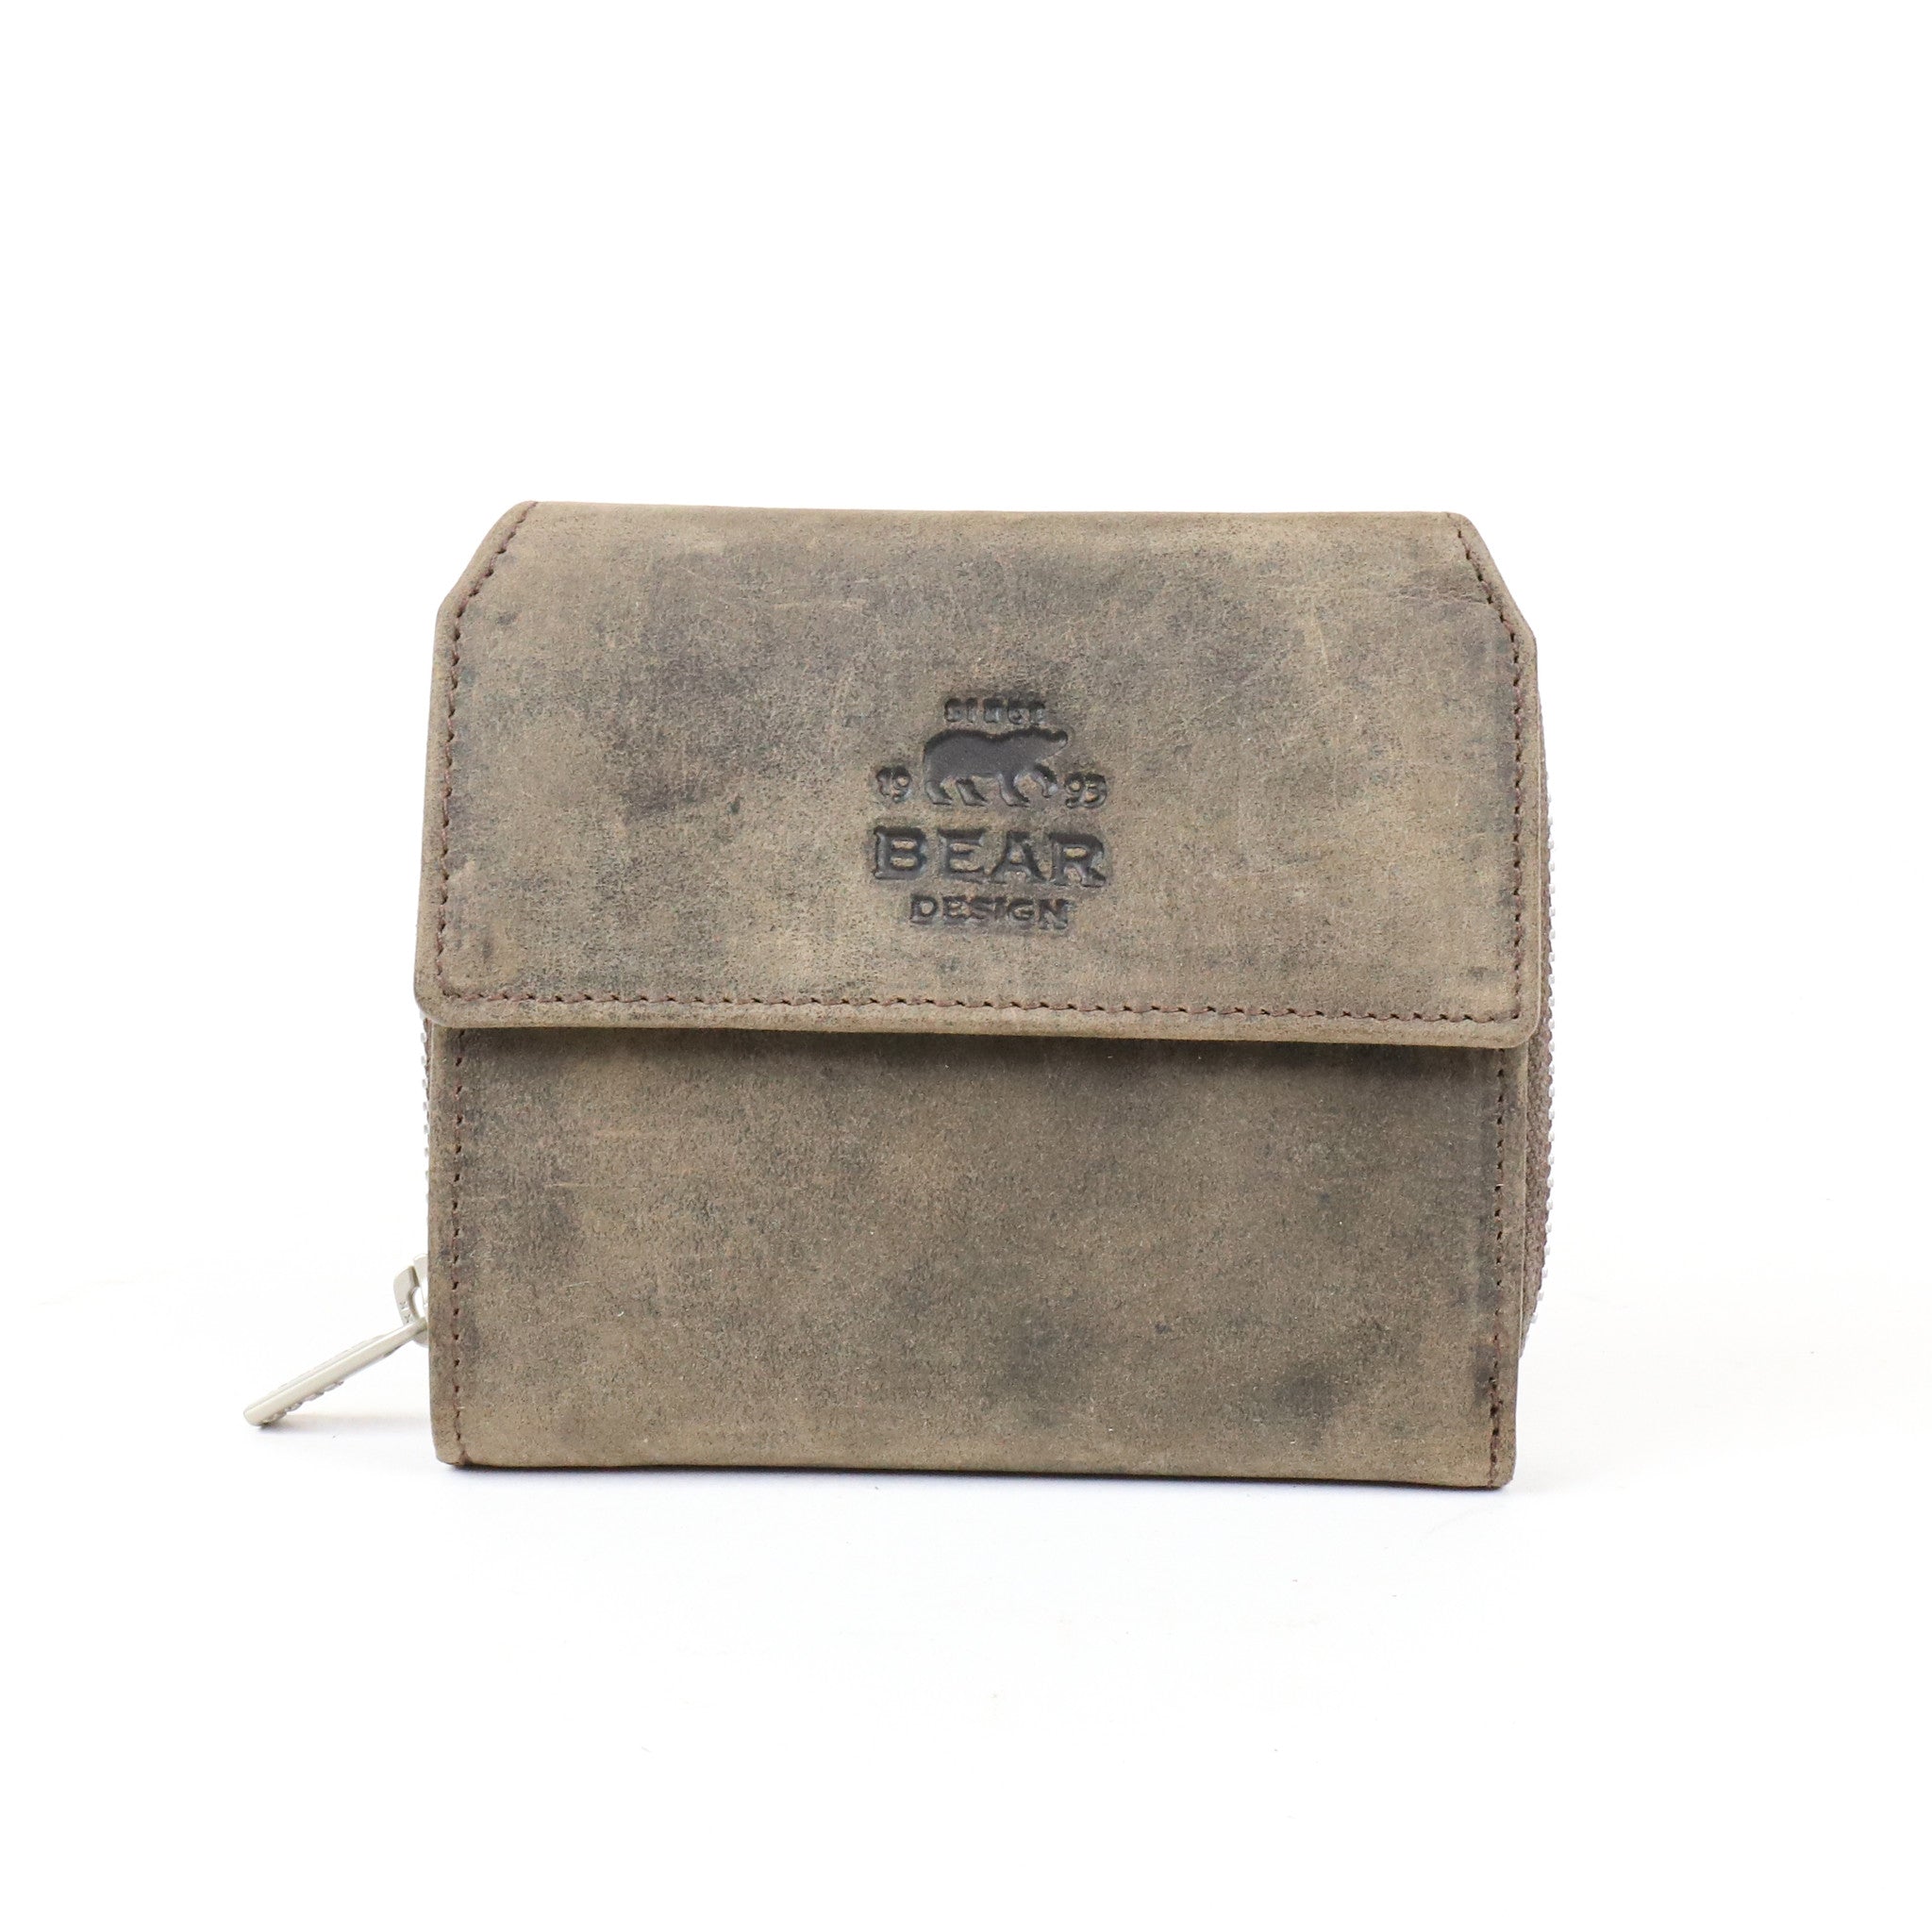 Zipper wallet 'Britt' brown - HD 9490